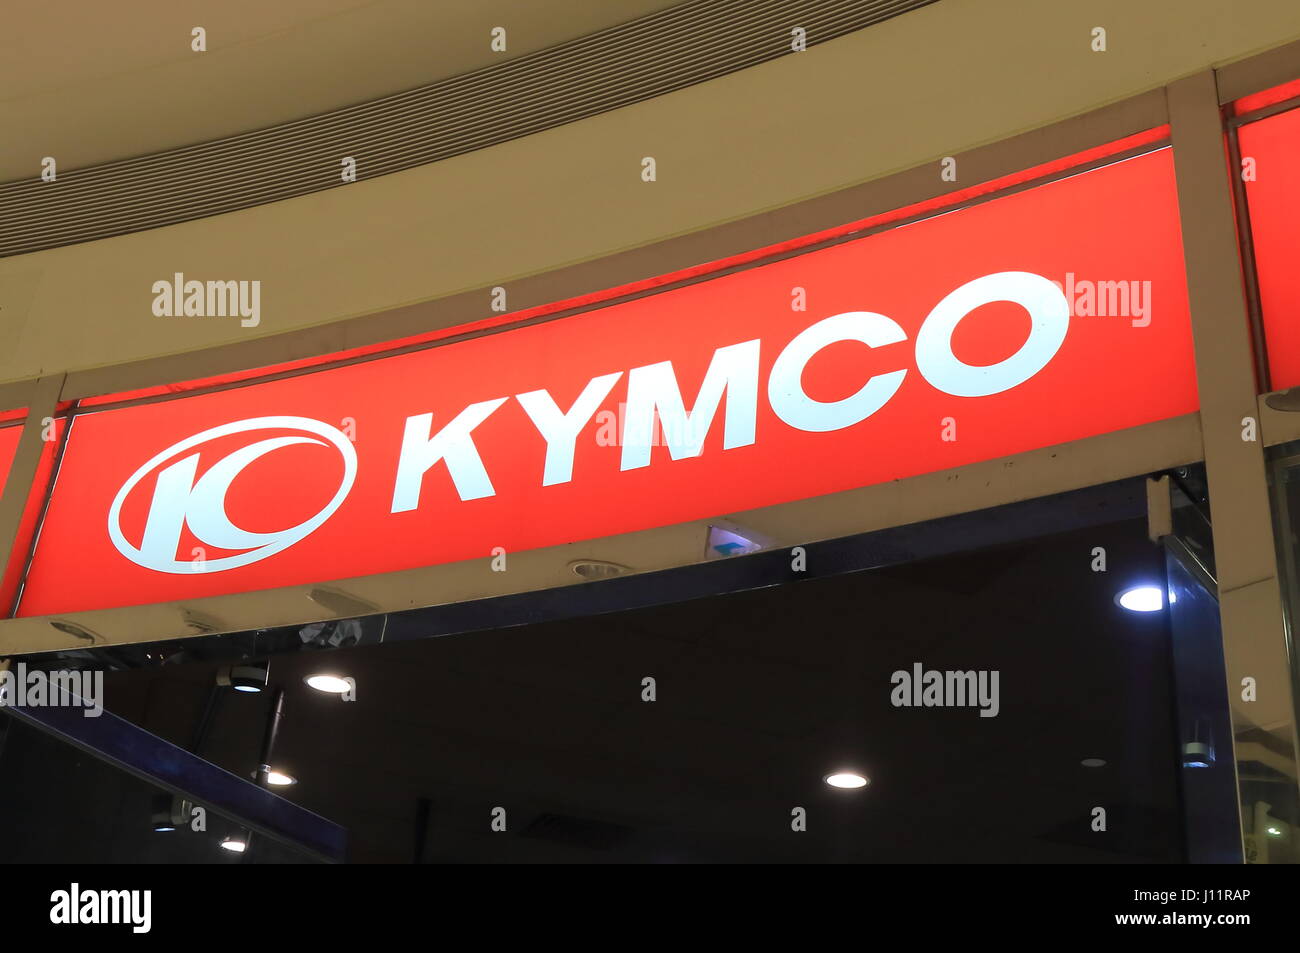 Kymco. Kymco est une société taïwanaise qui fabrique des scooters, motos fondée en 1963. Banque D'Images